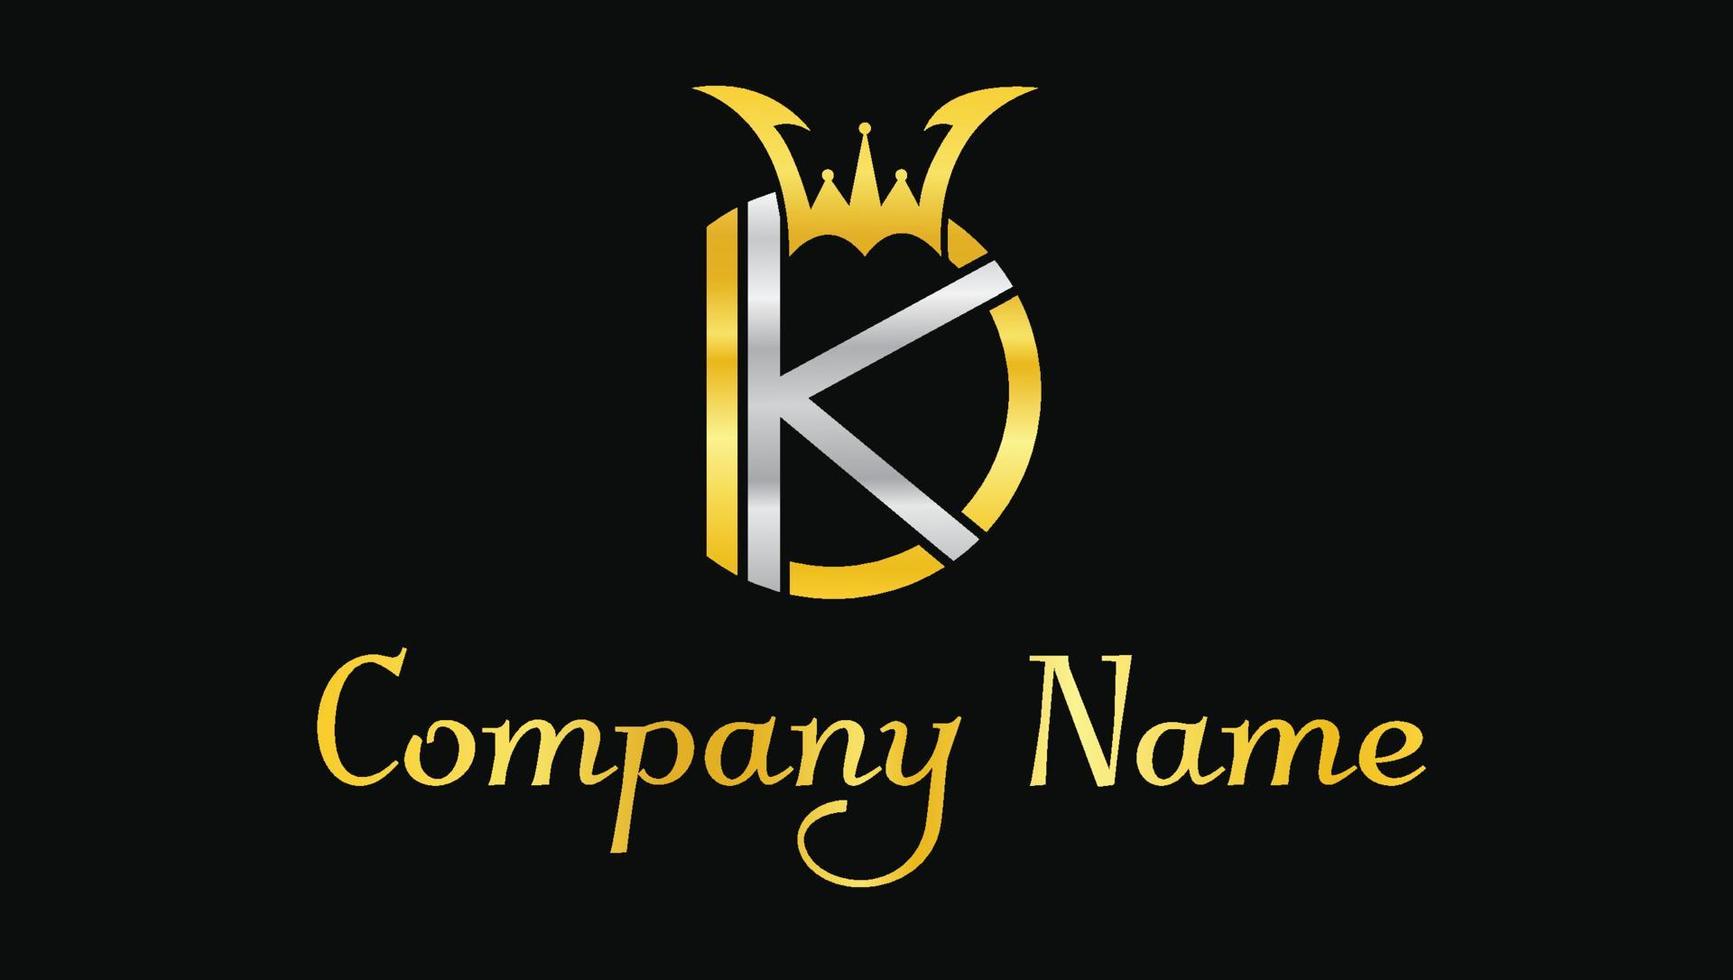 letras kd corona plantilla de diseño de logotipo de marca moderna lujosa vector